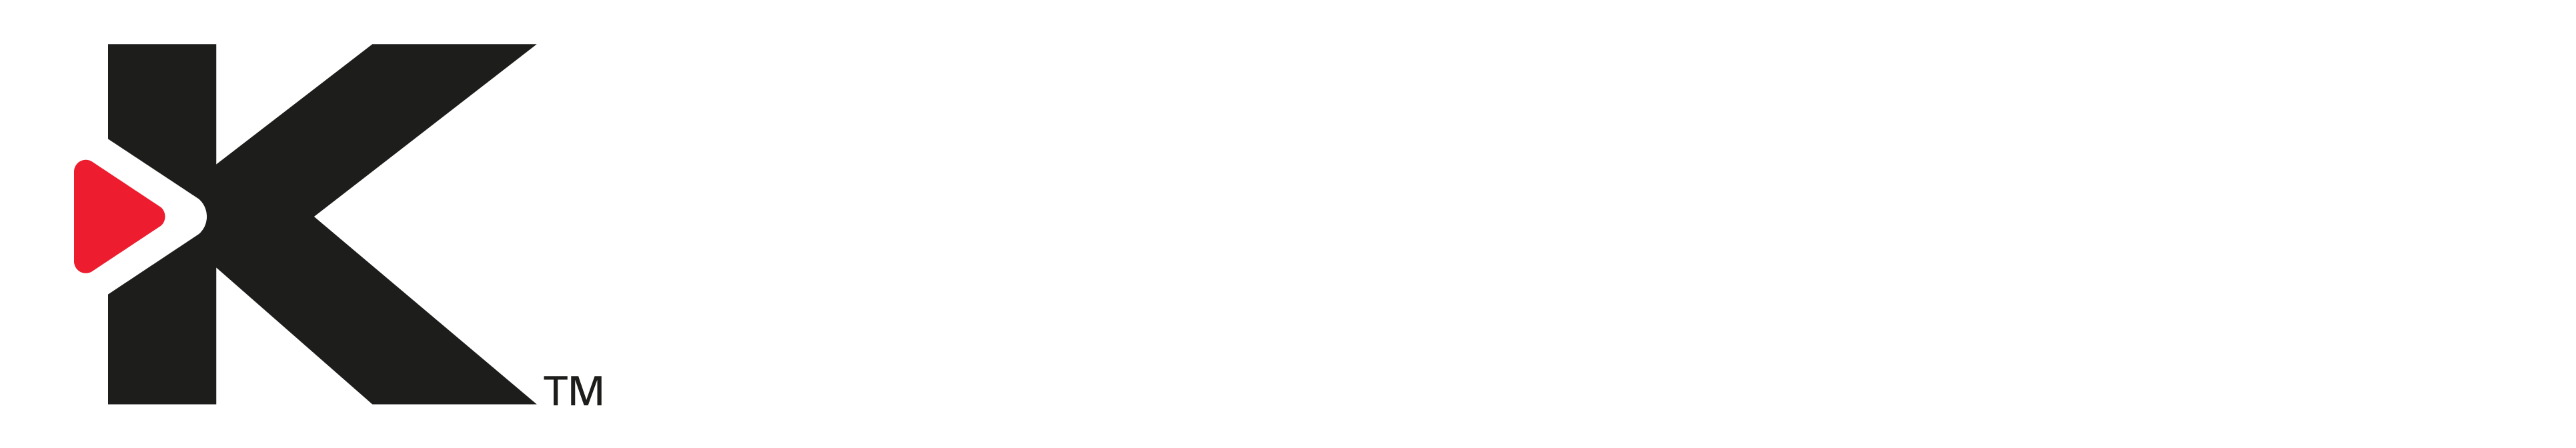 kapro logo